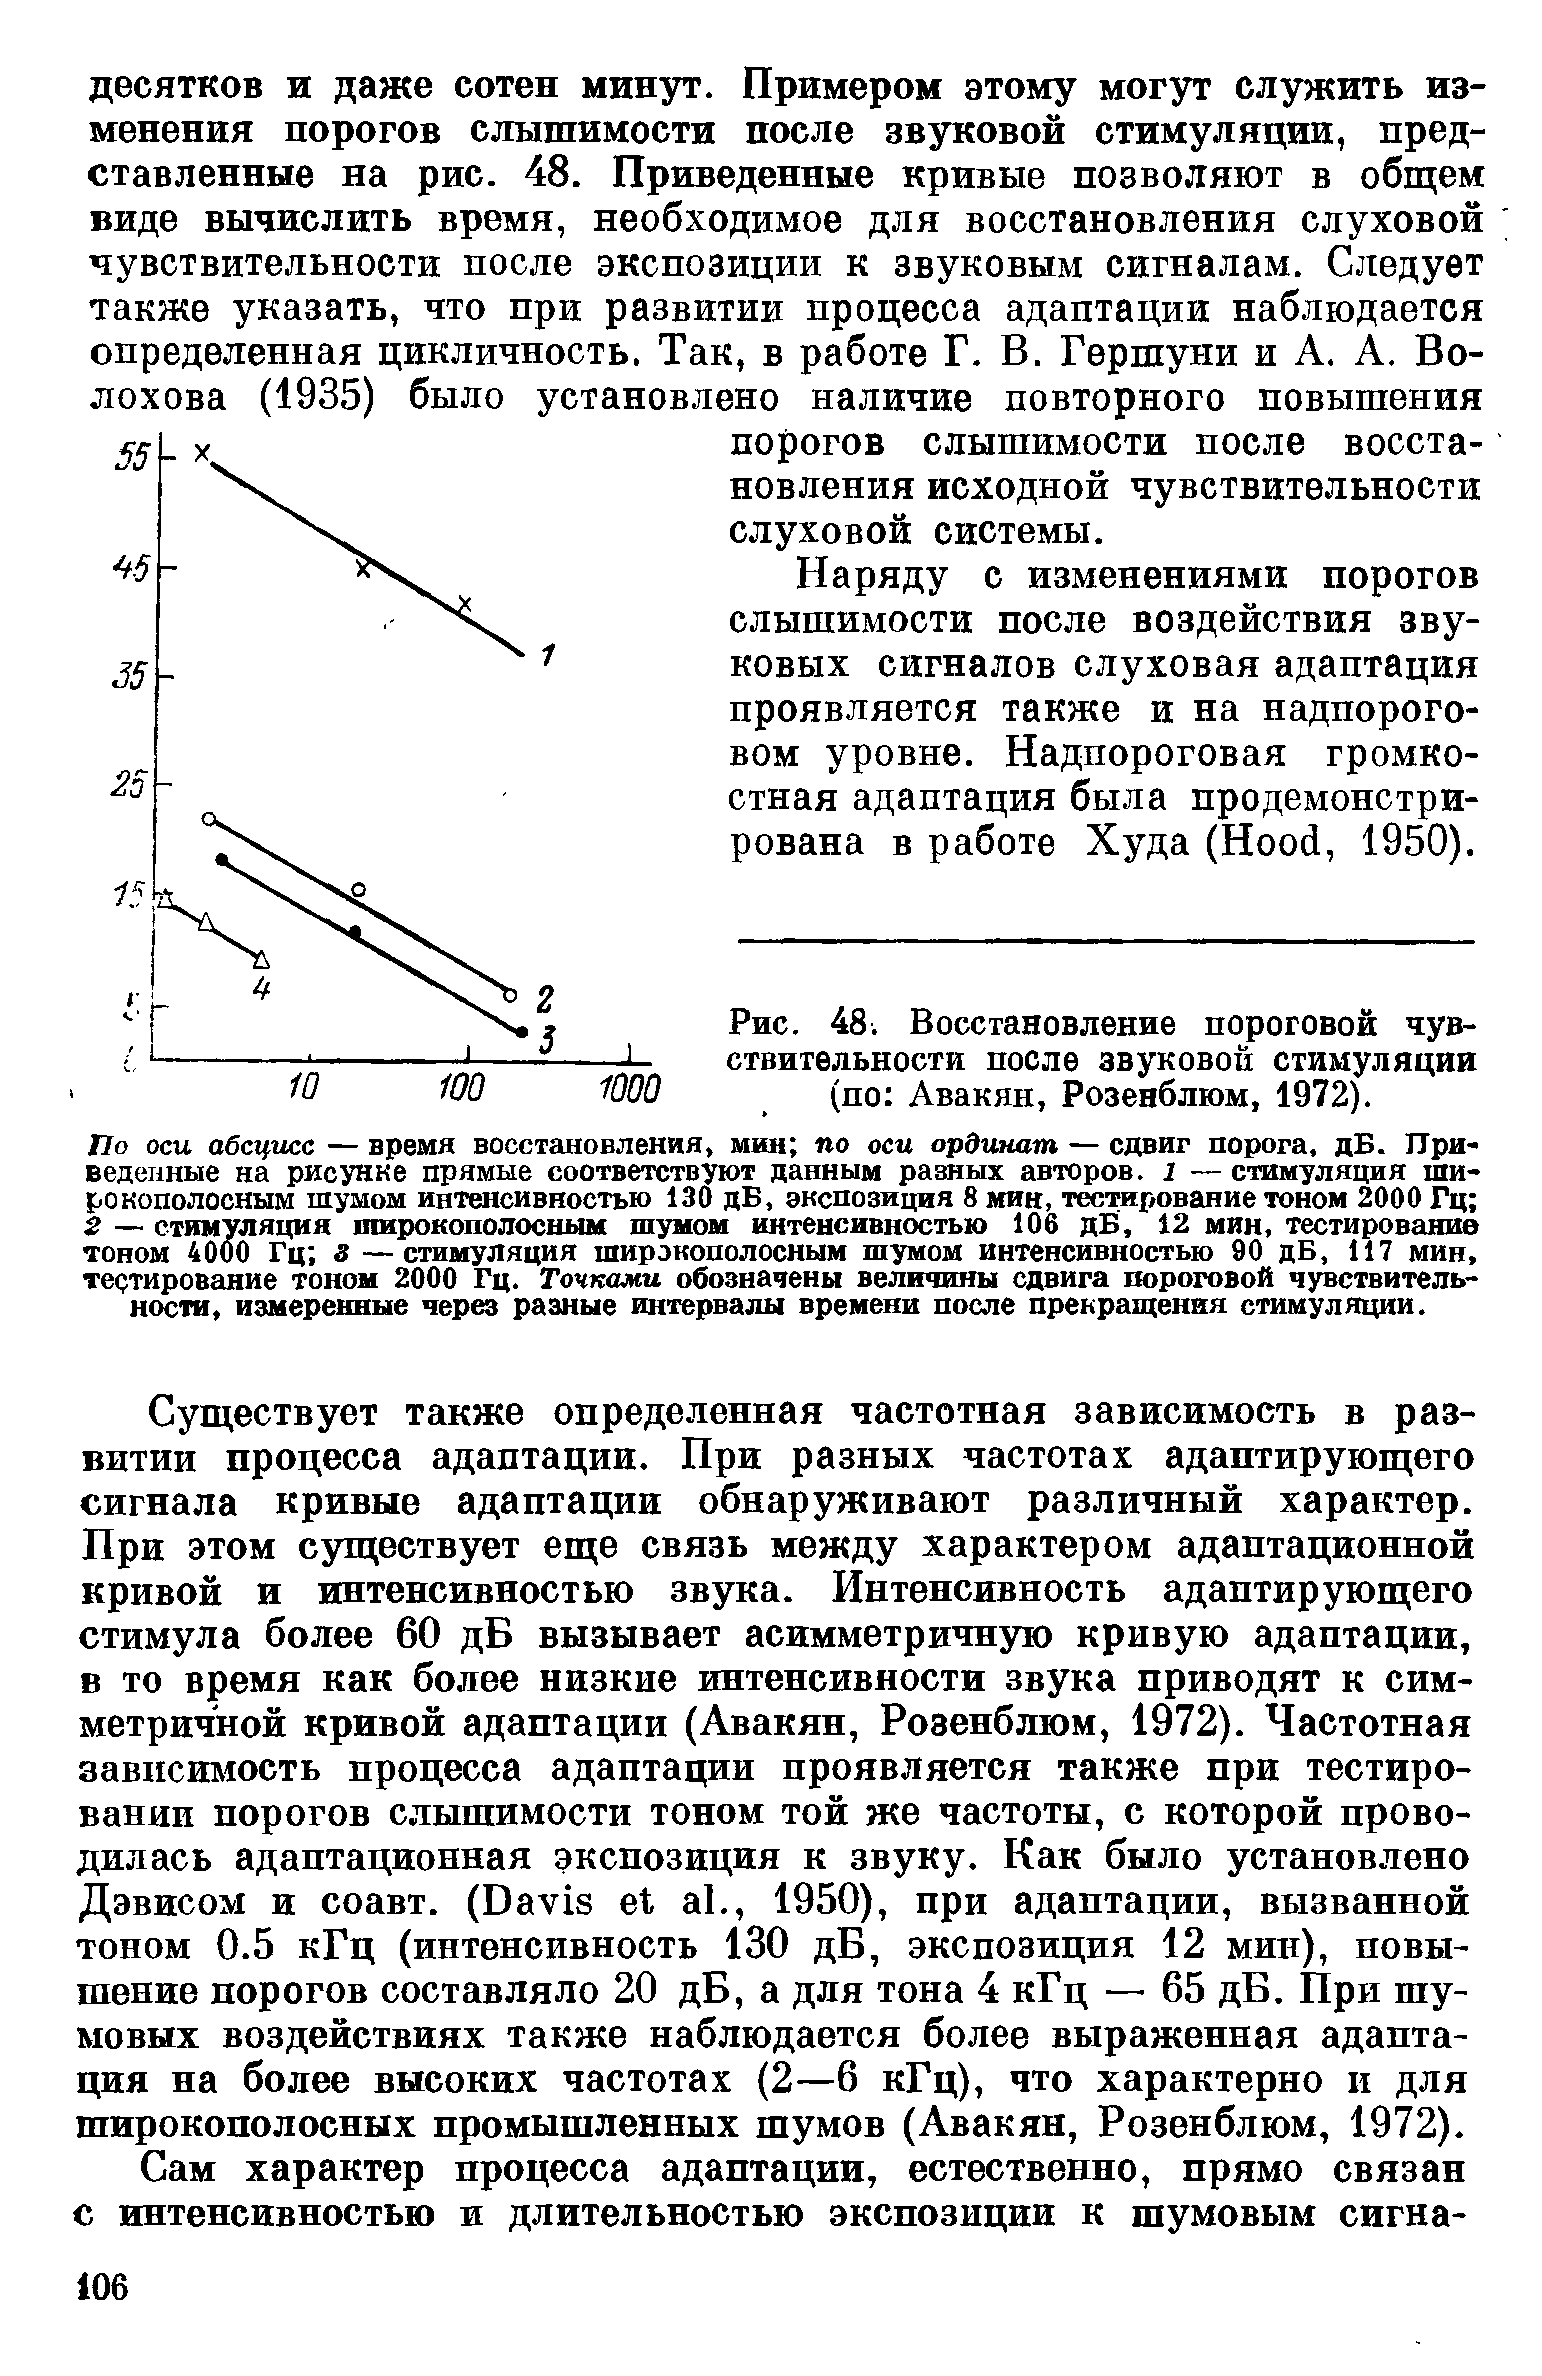 Рис. 48. Восстановление пороговой чувствительности после звуковой стимуляции (по Авакян, Розенблюм, 1972).